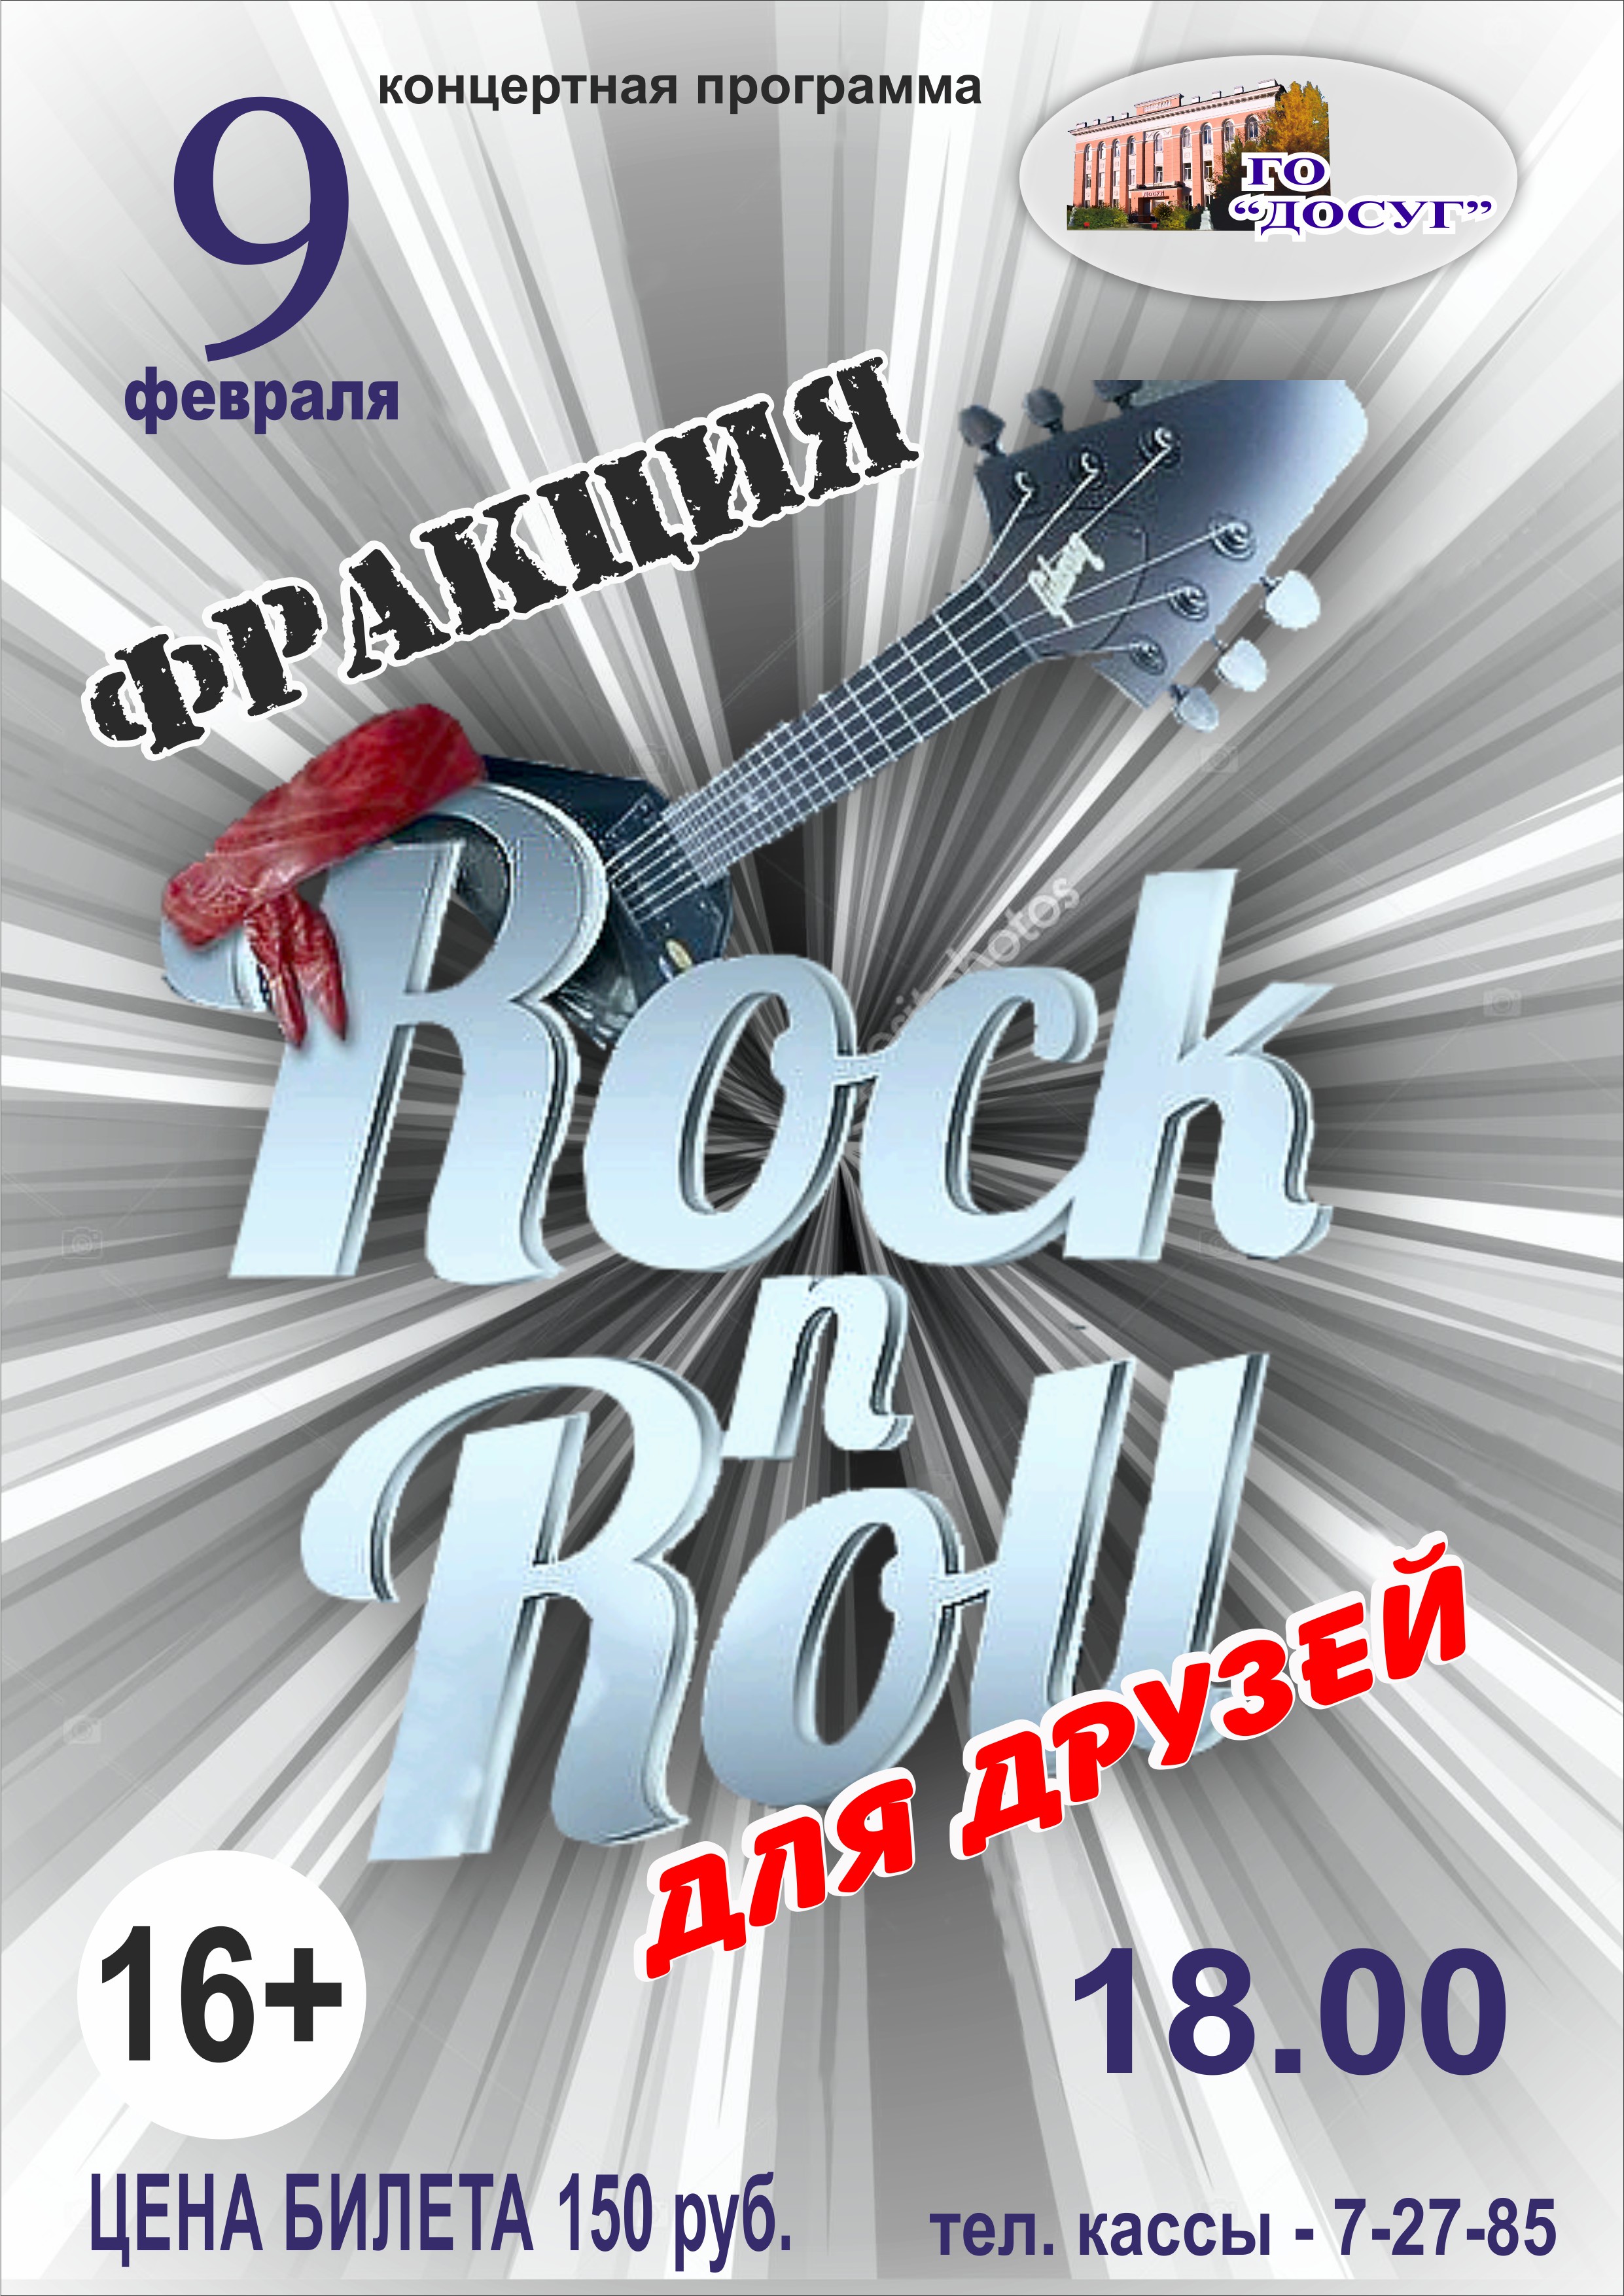 9 февраля в 18.00 Концертная программа “Rock n Roll для друзей” группы “Фракция”  цена билета: 150 руб. возрастной ценз 16+